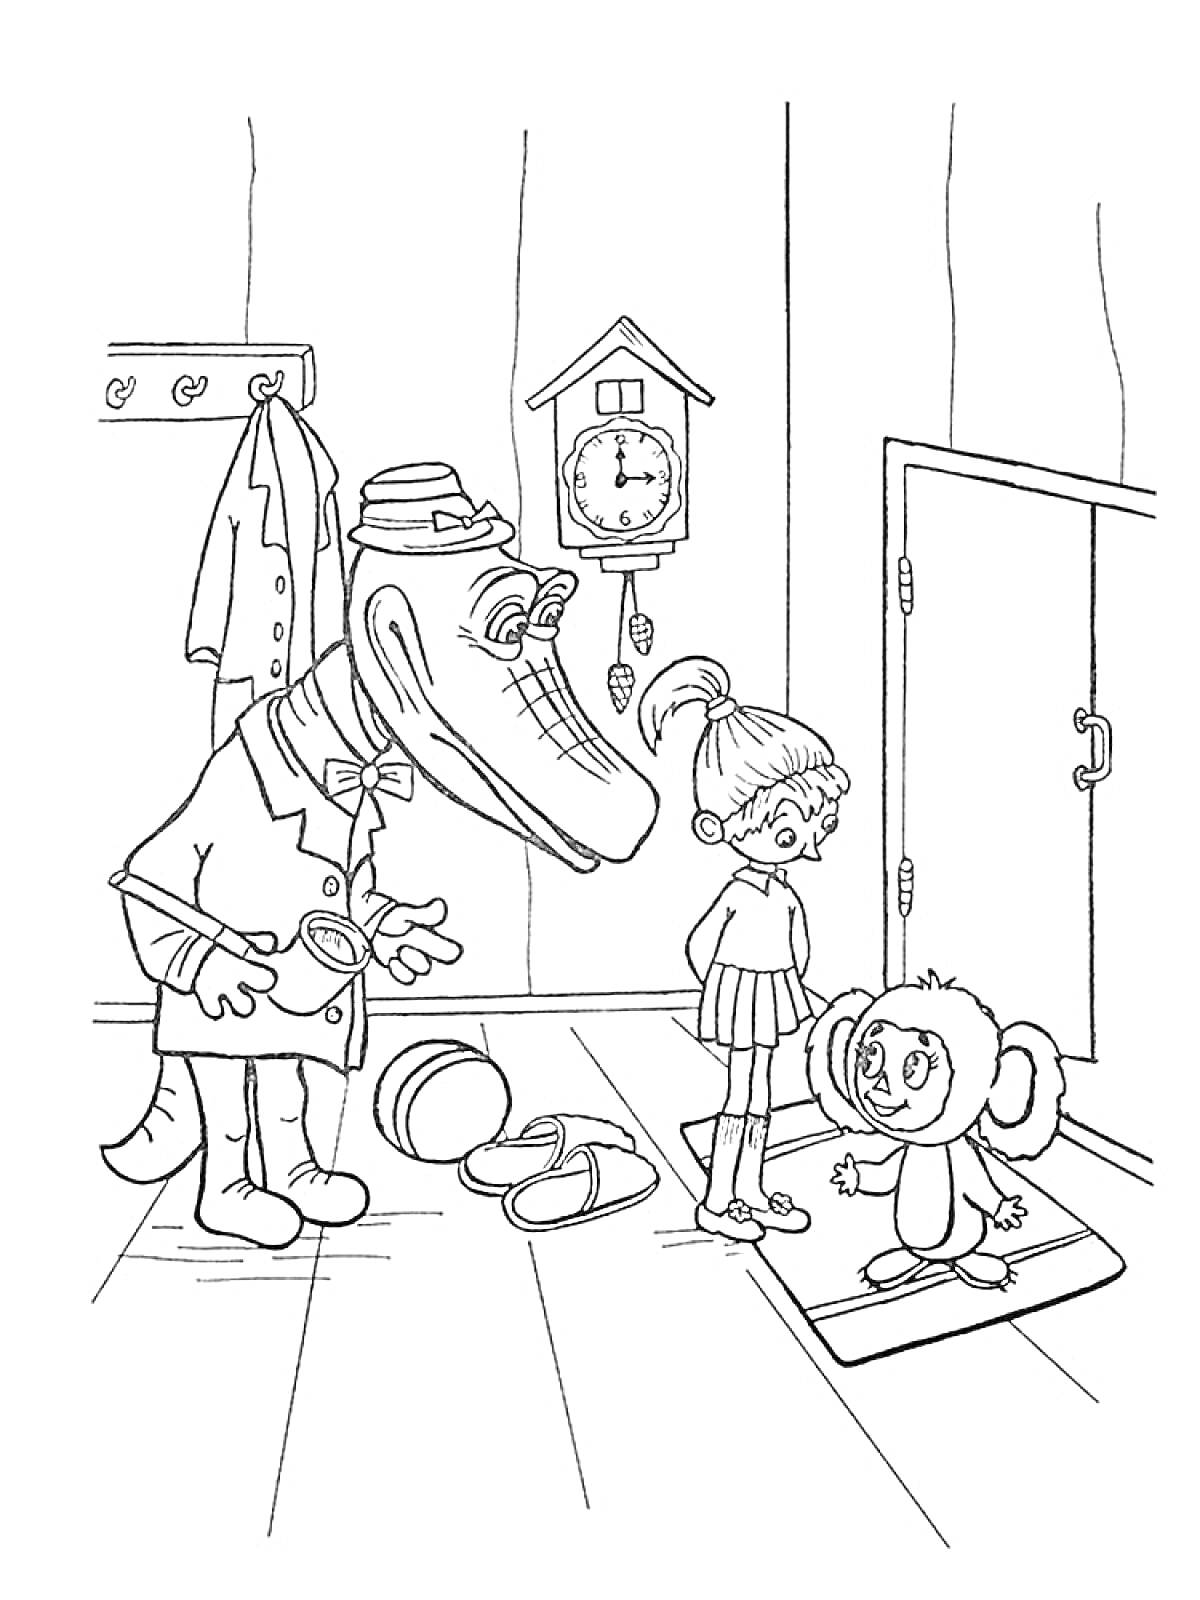 Раскраска Крокодил Гена, девочка и Чебурашка в прихожей, часы с кукушкой, мяч, обувь